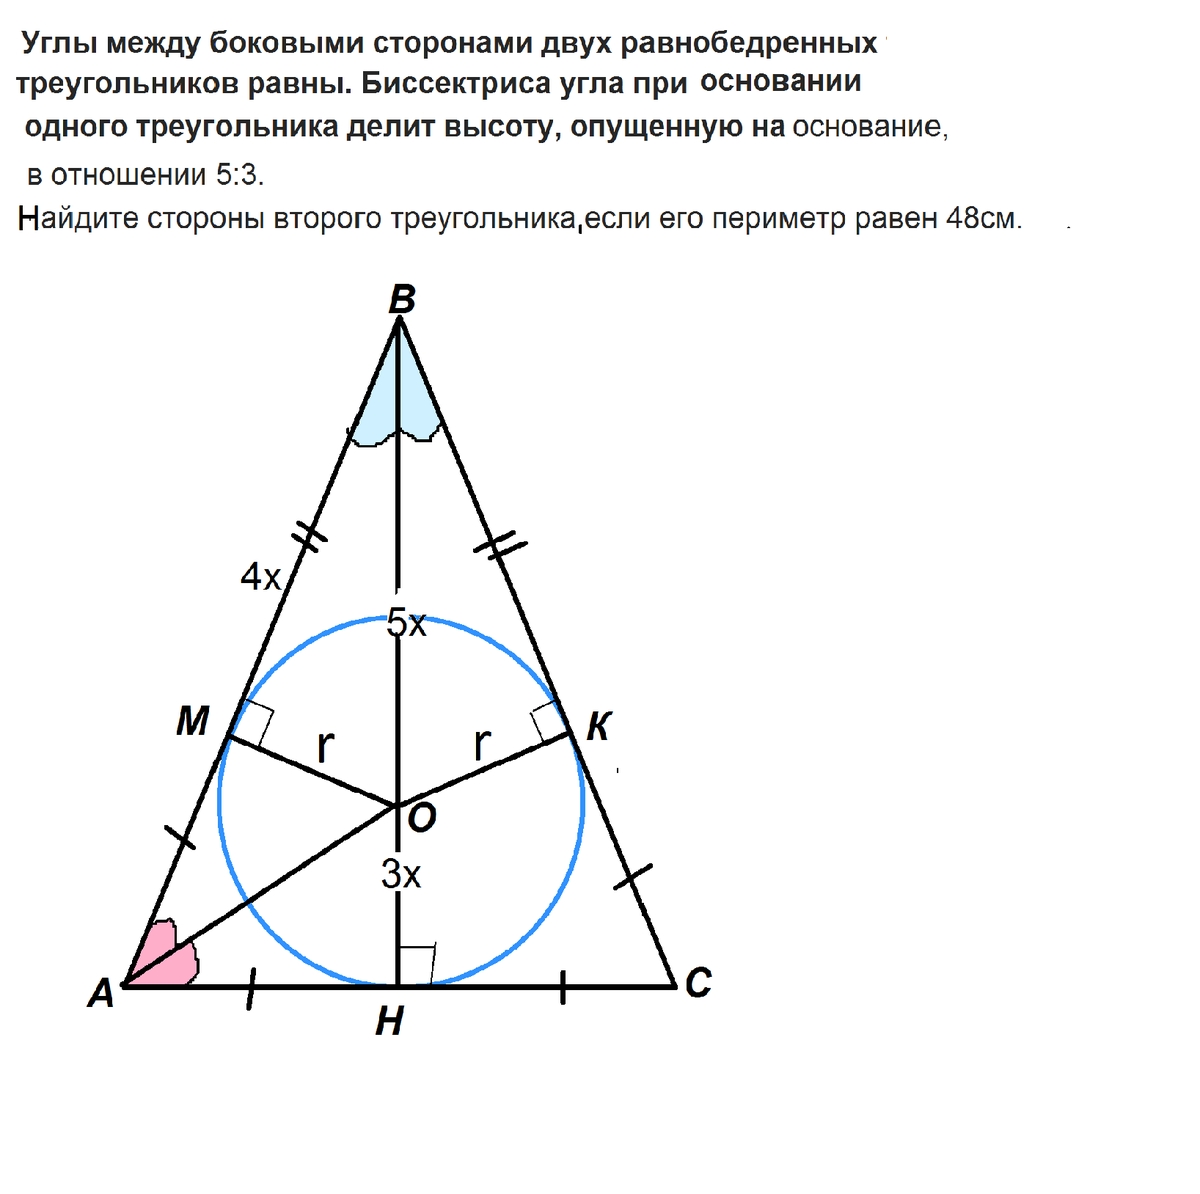 Углы равнобедренного треугольника равны почему. Биссектриса и высота в равнобедренном треугольнике. Биссектриса угла при основании равнобедренного треугольника. Биссектриса при основании равнобедренного треугольника. Высота равнобедренного треугольника при основании делится на.